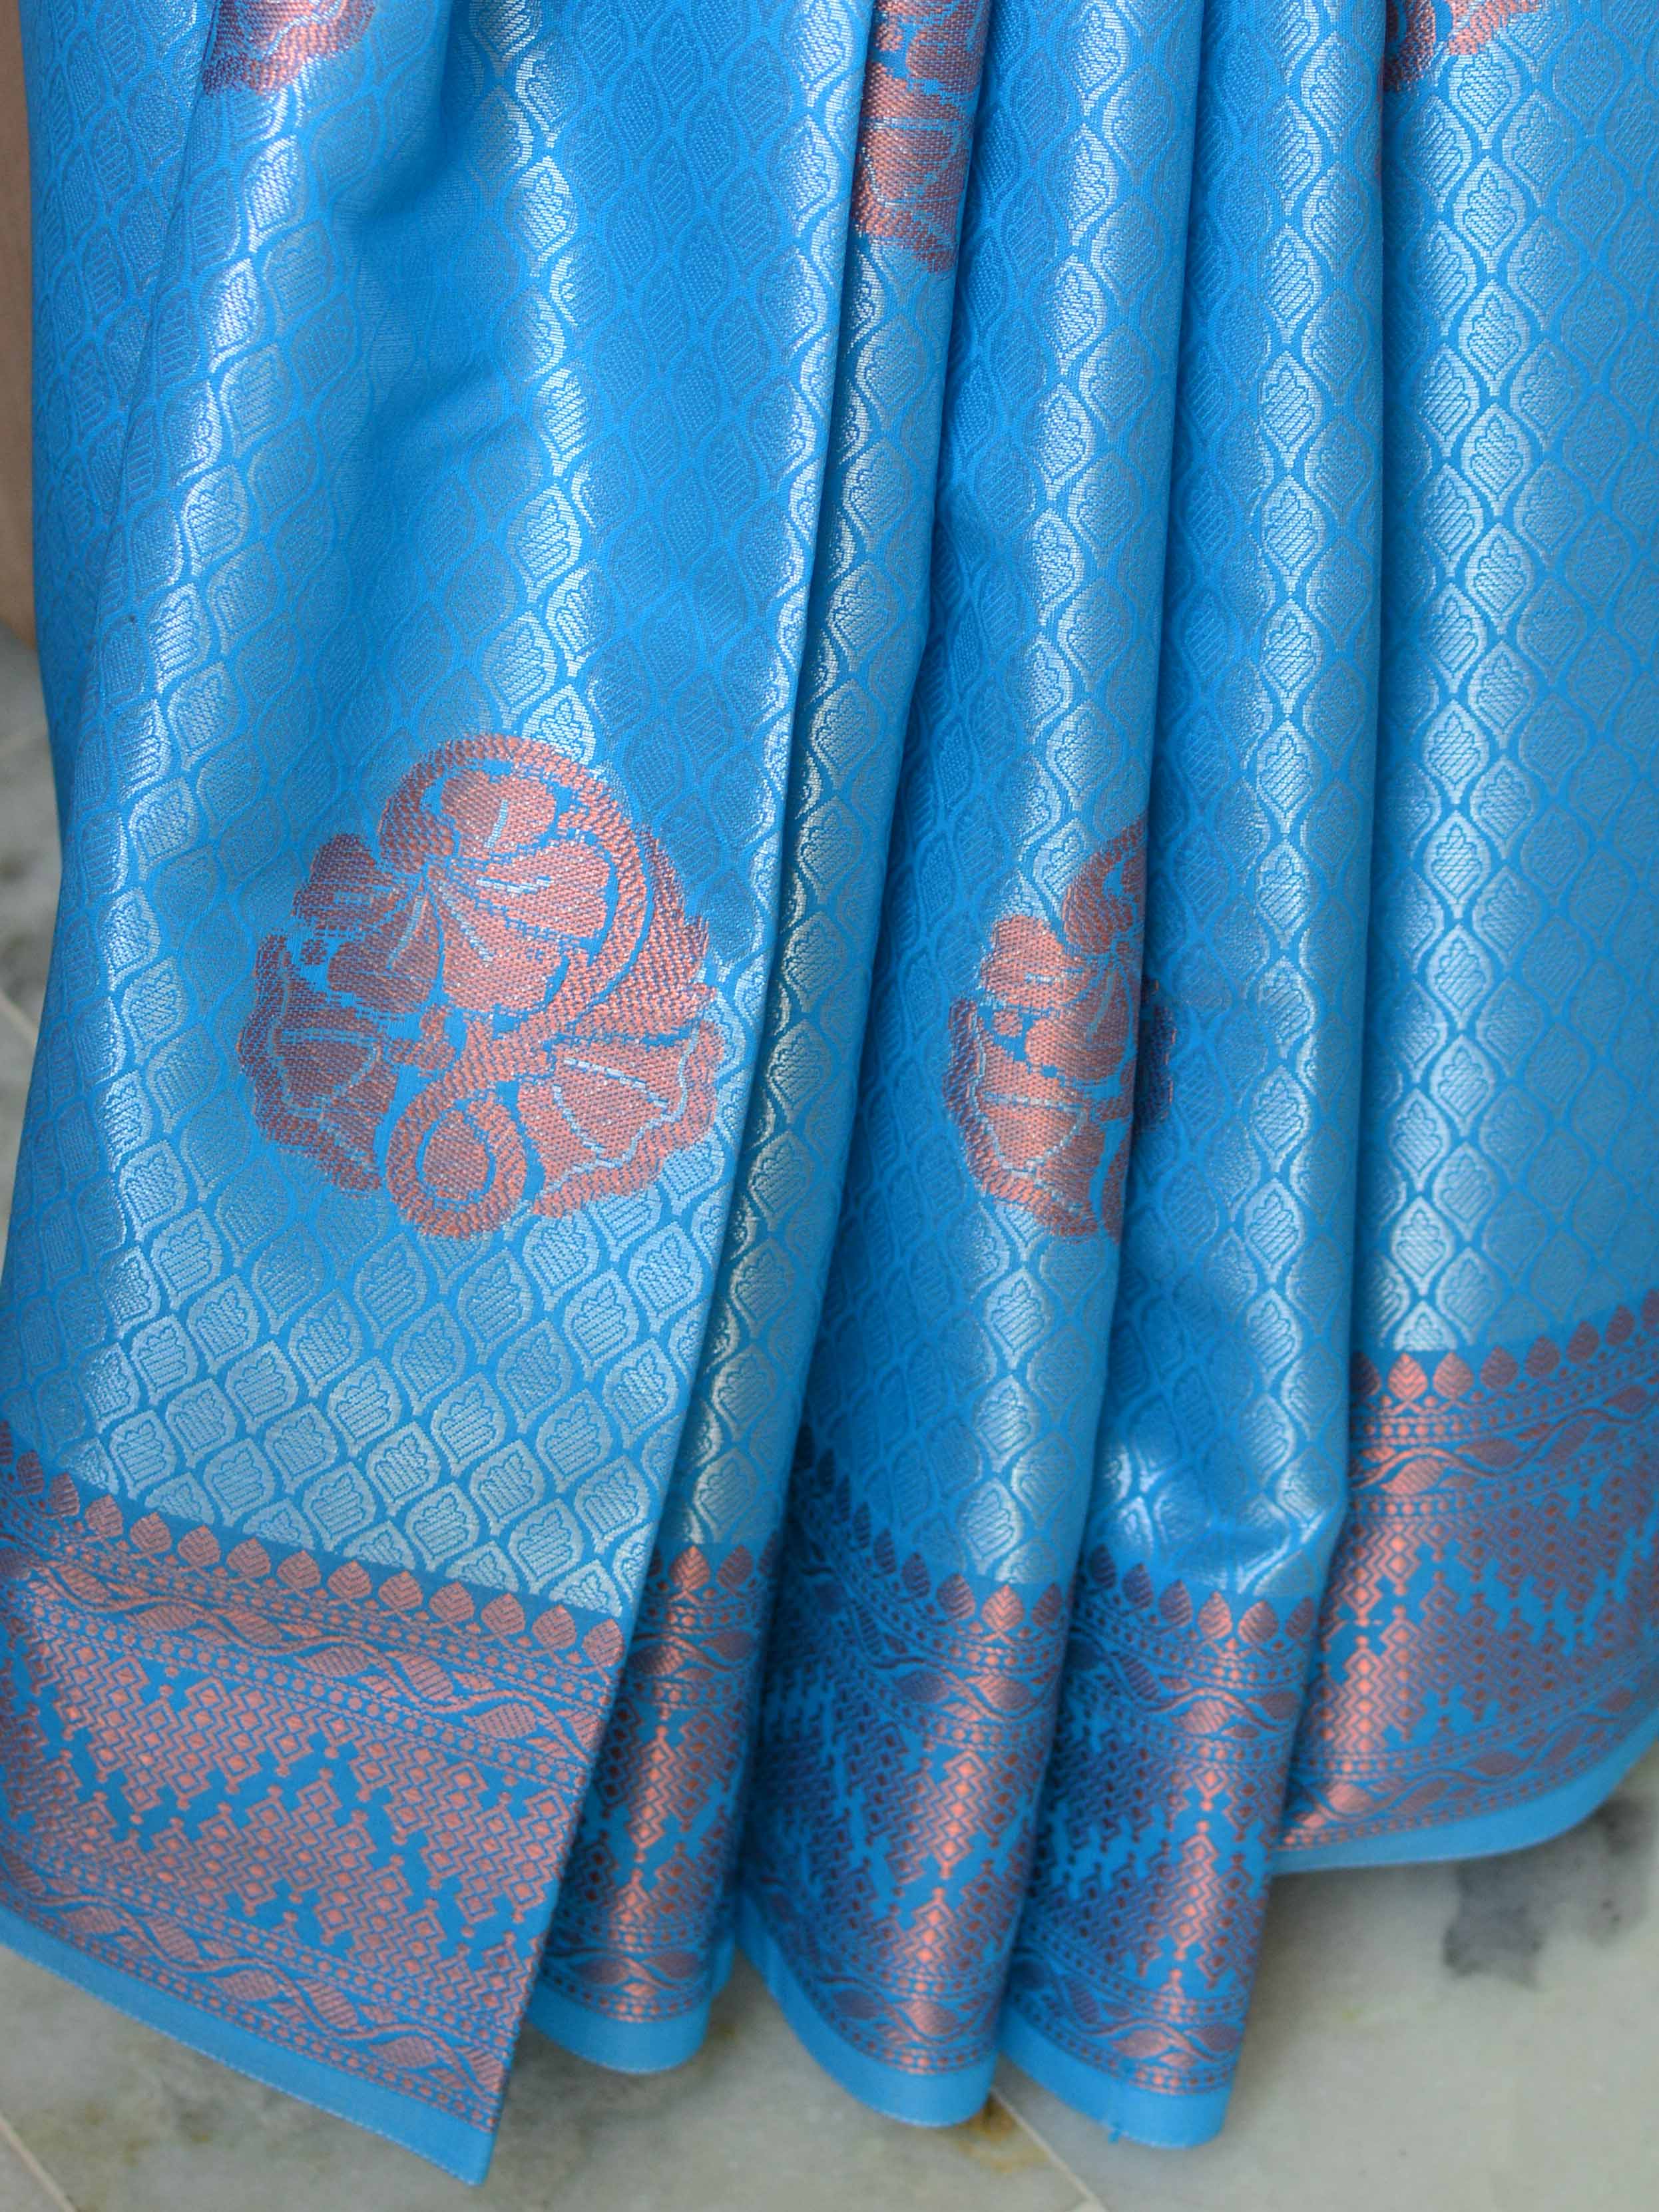 Banarasee Handwoven Semi Silk Saree With Copper Zari Buta Design & Border Design-Sky Blue